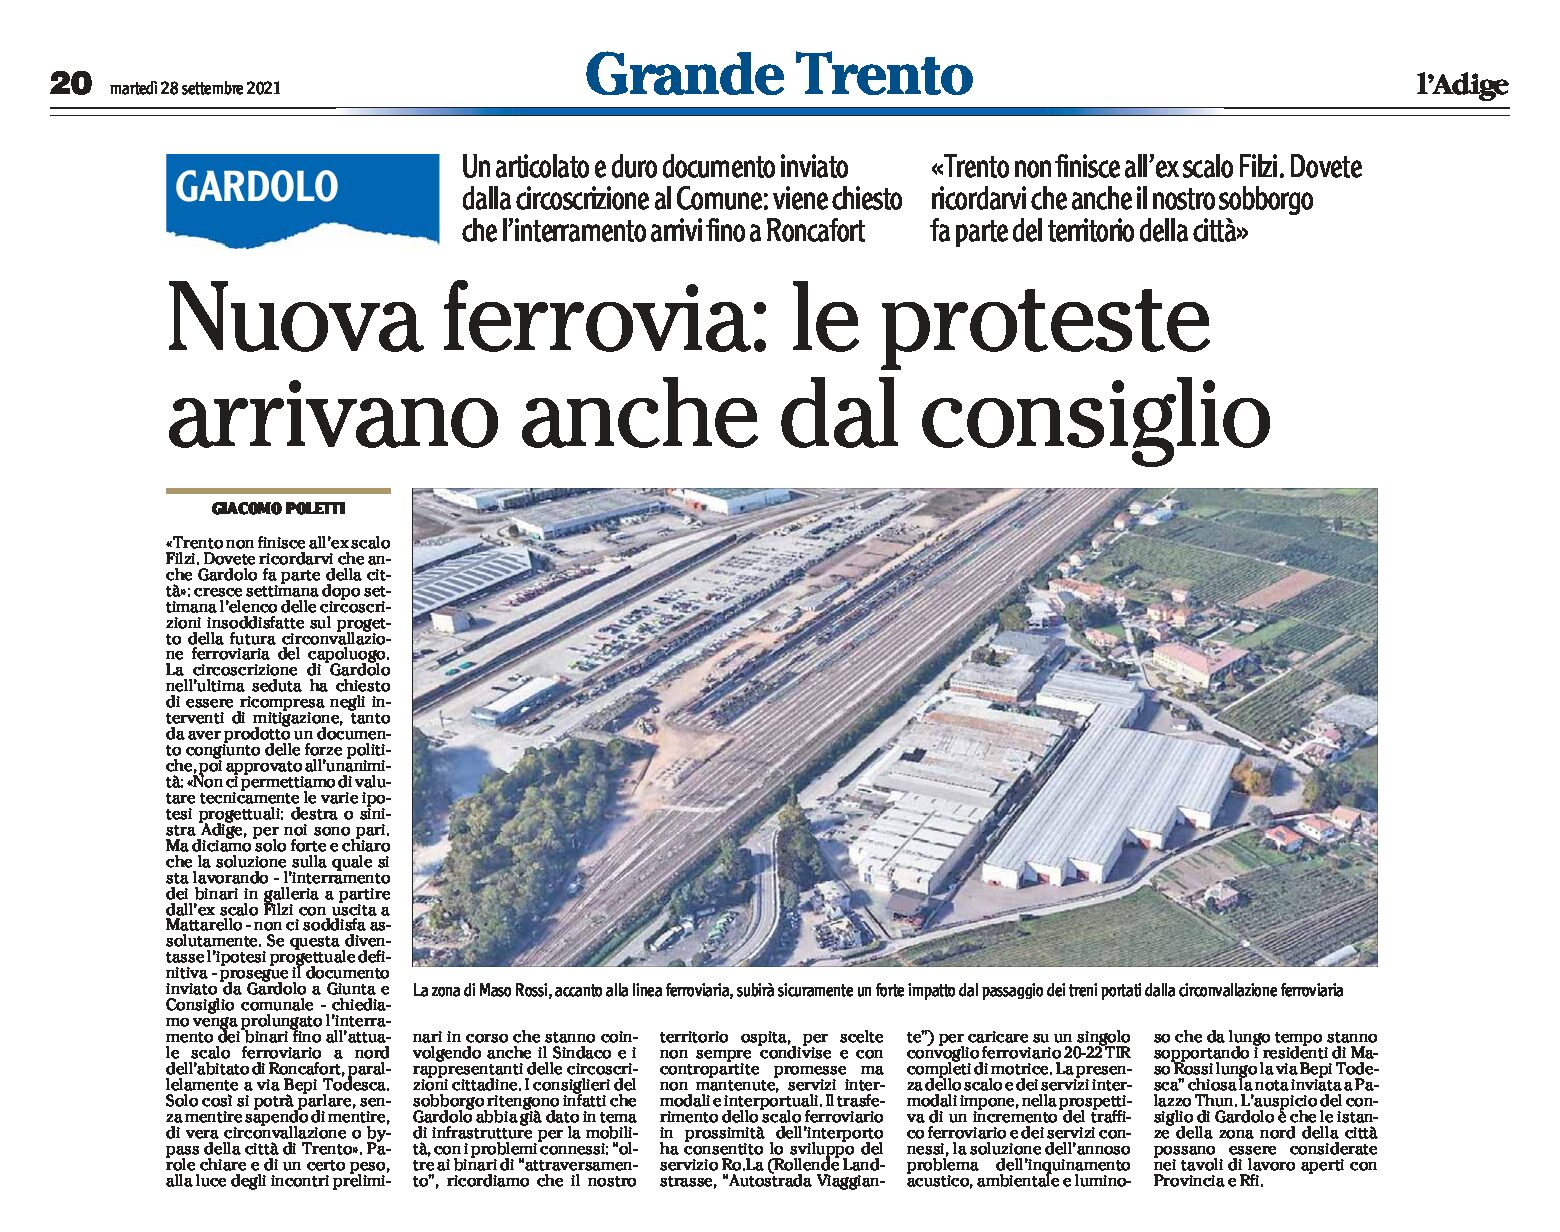 Trento, interramento: Gardolo protesta e chiede il prolungamento fino a nord di Roncafort